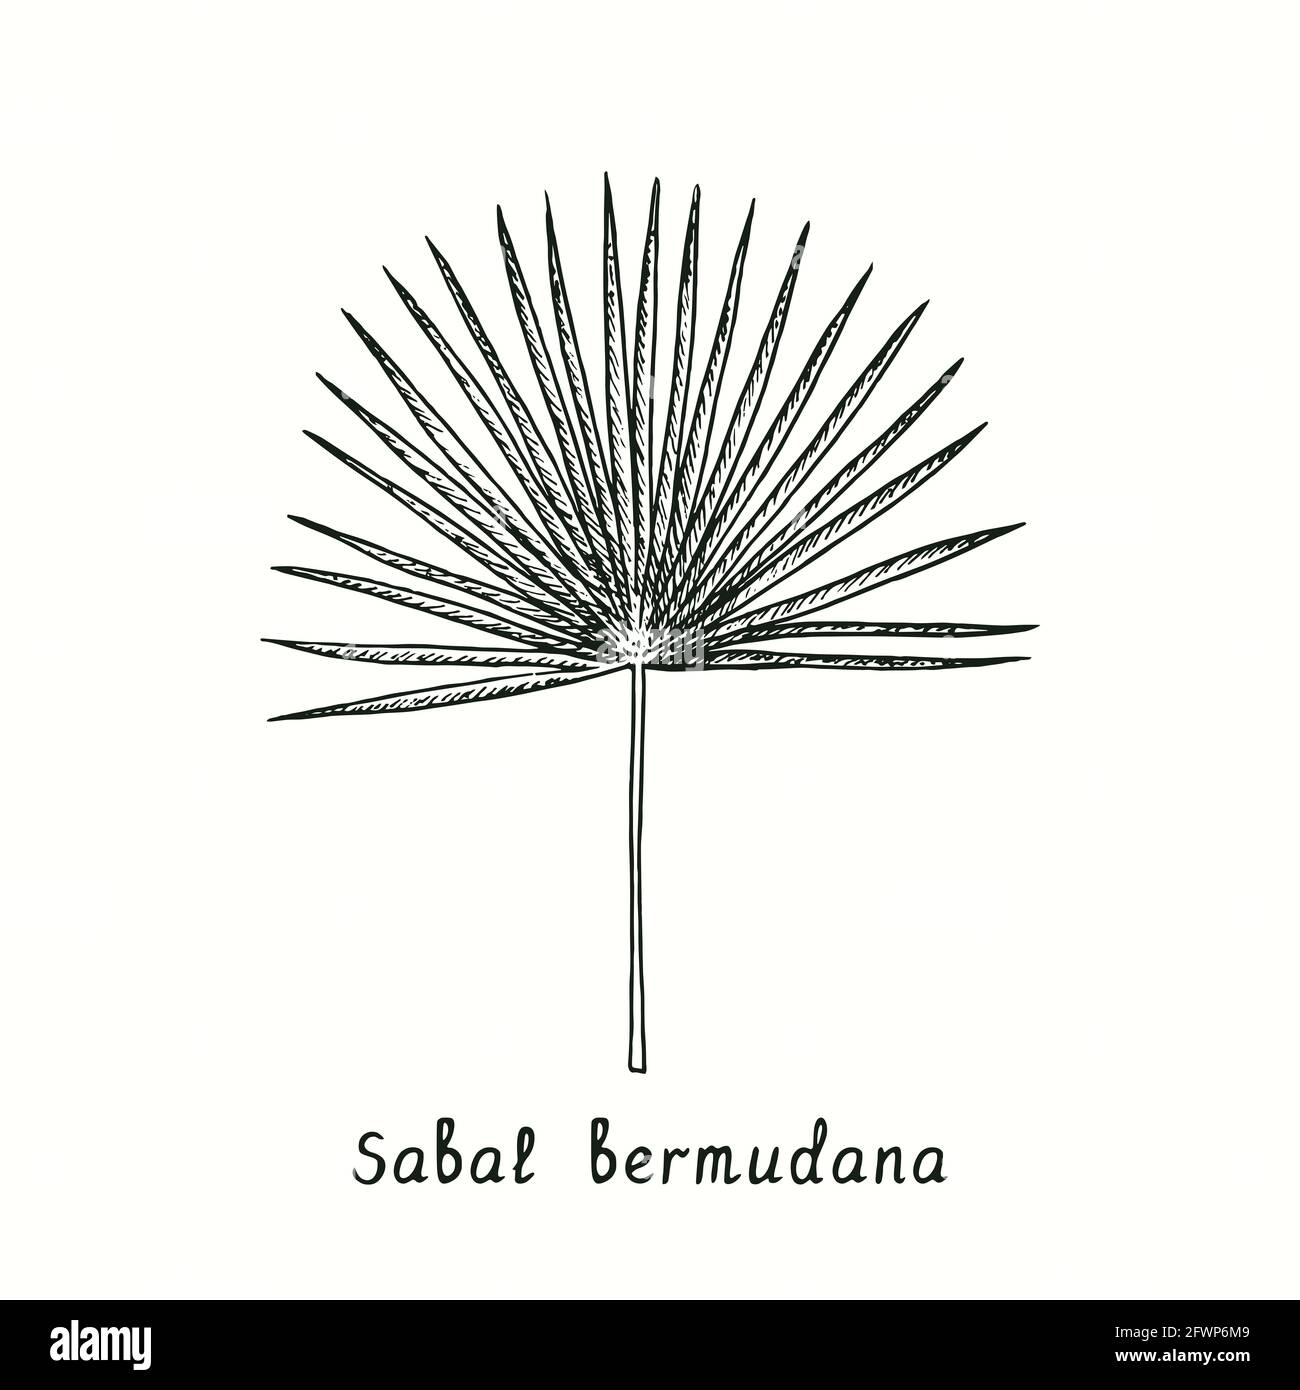 Hoja sabal bermudana. Dibujo de fideos en blanco y negro con tinta en estilo de corte de madera. Foto de stock